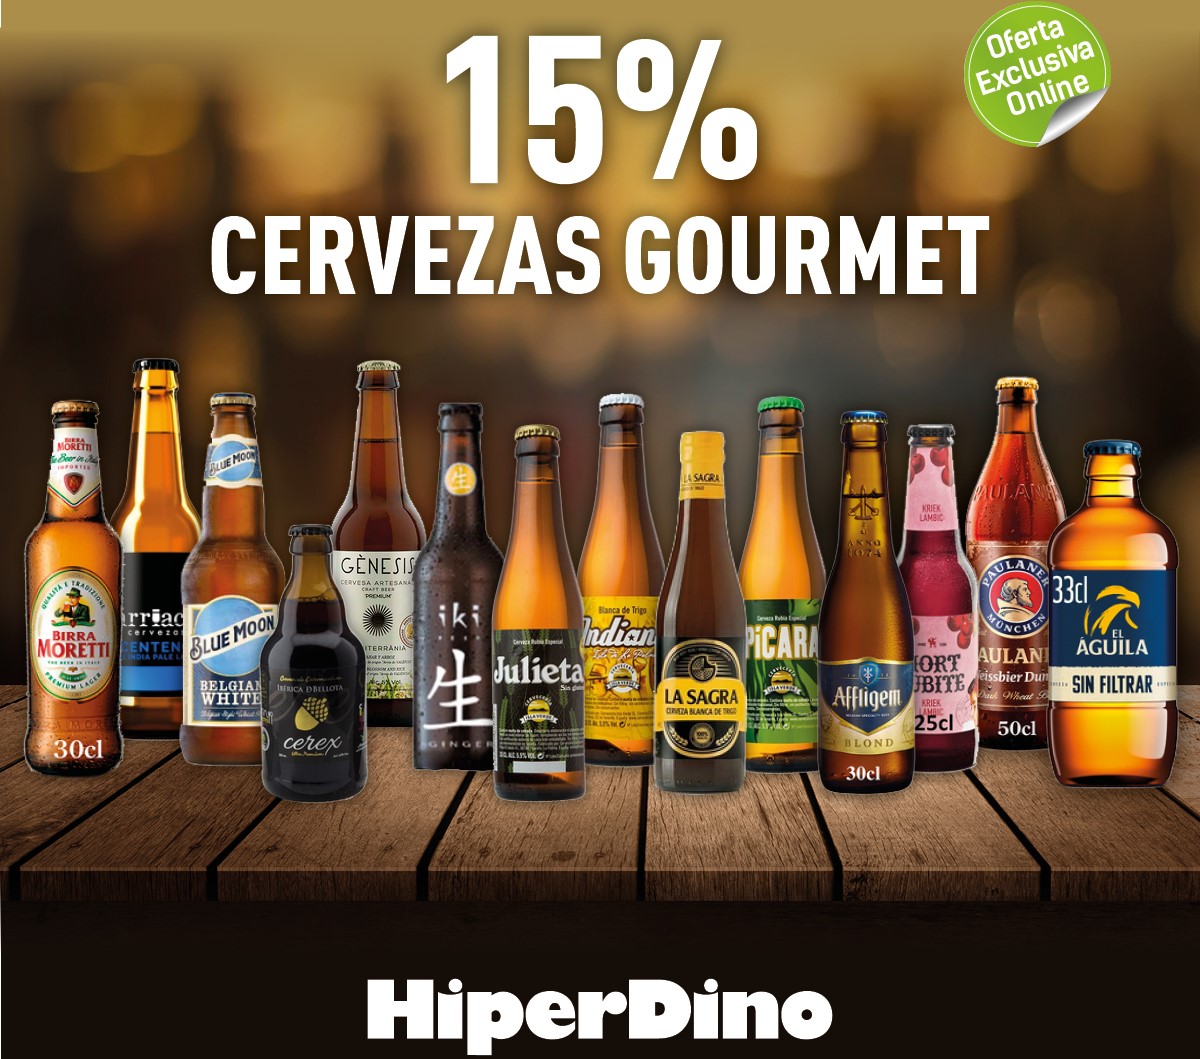 Cervezas gourmet de HiperDino